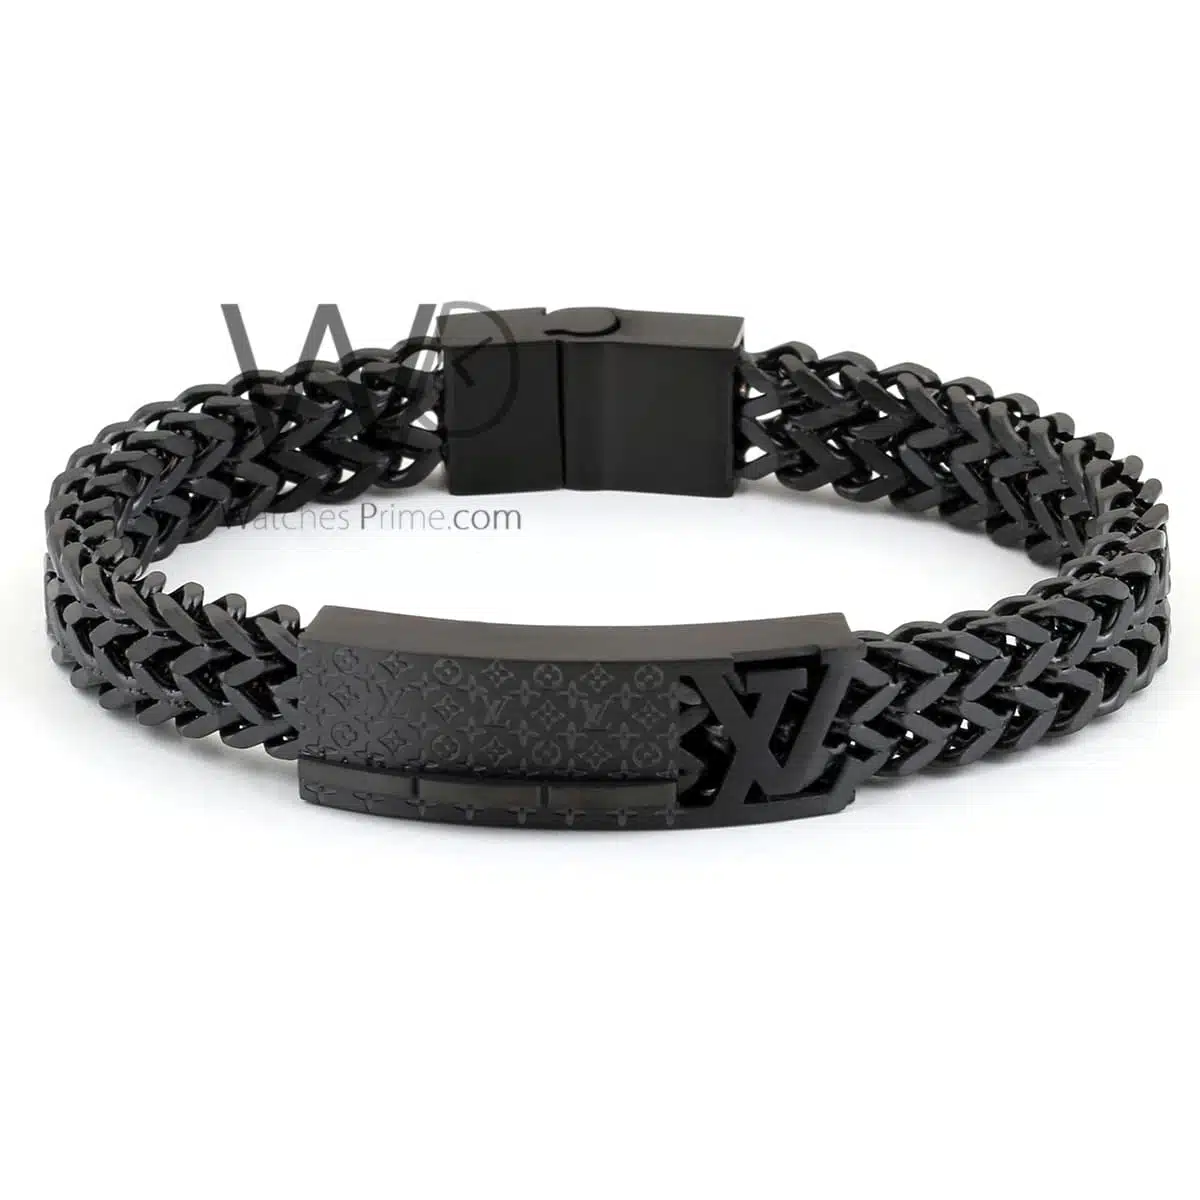 Louis Vuitton black metal men's bracelet | Watches Prime